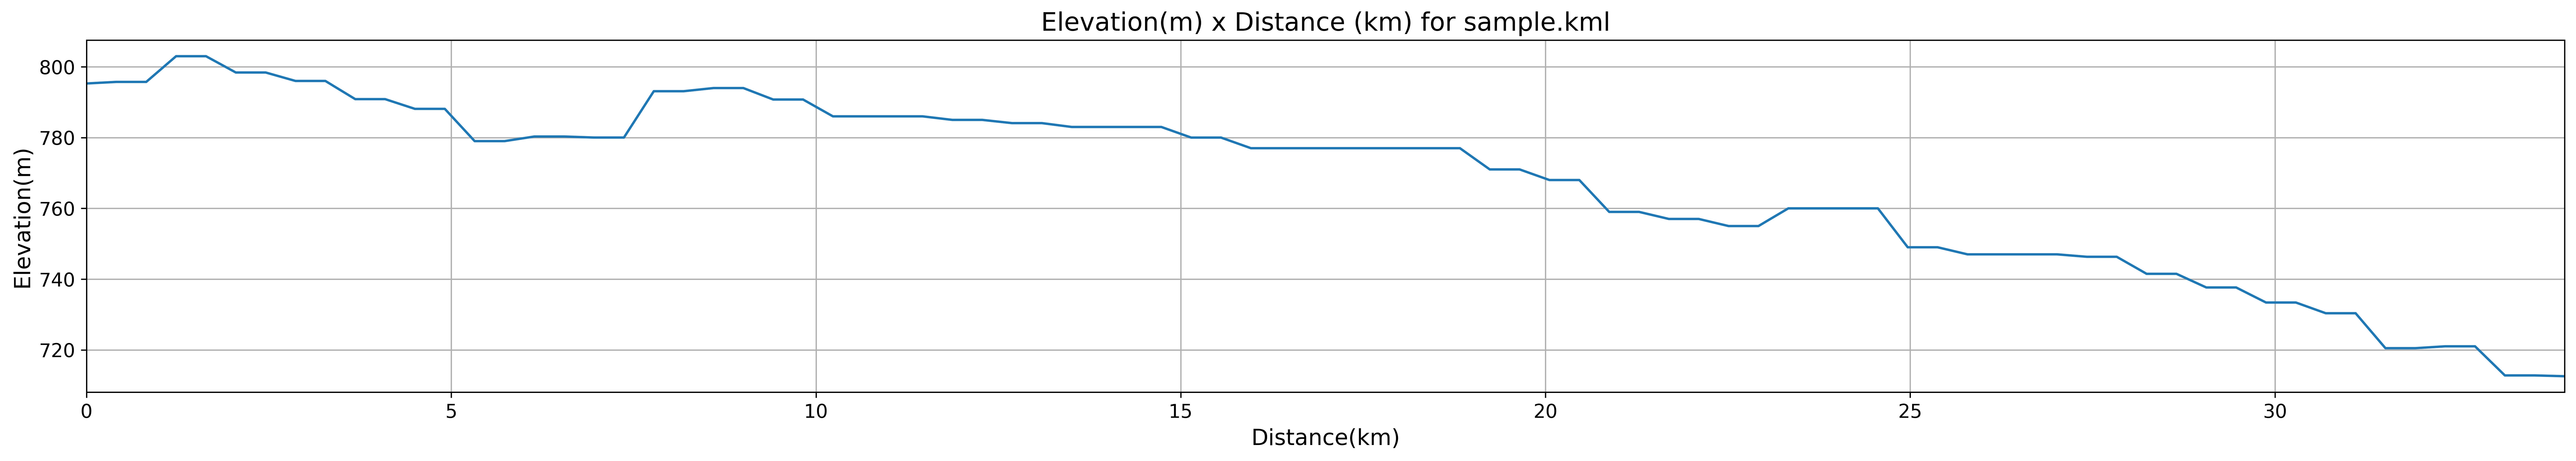 Altitude x Distance Plot